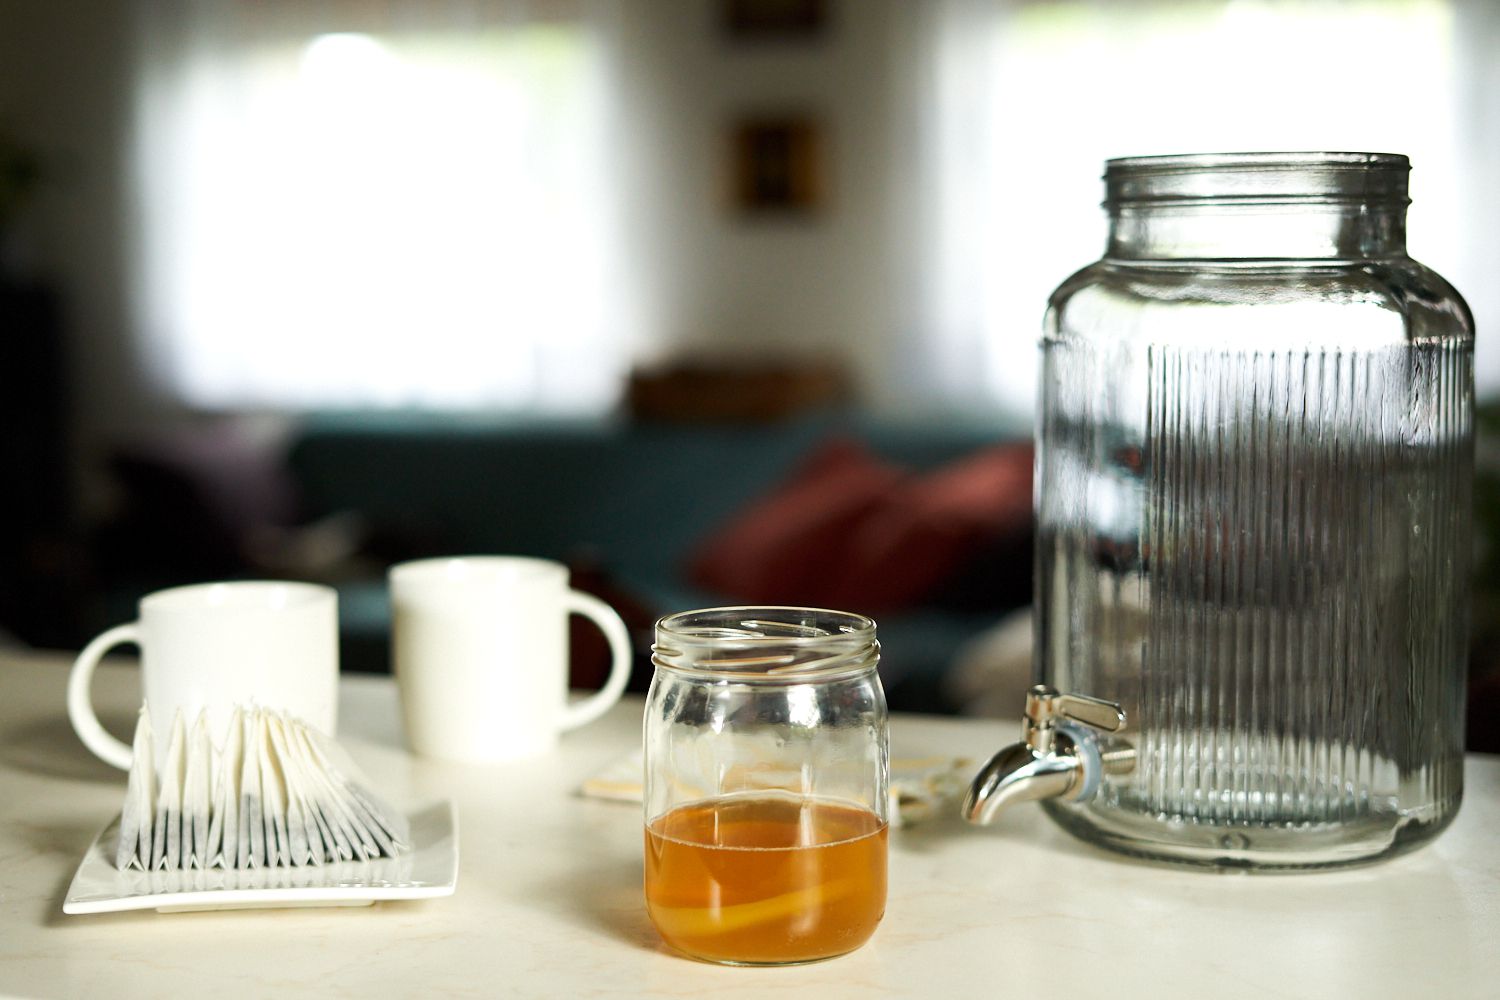 加仑大小的玻璃容器和康普茶制造用品在家中展示